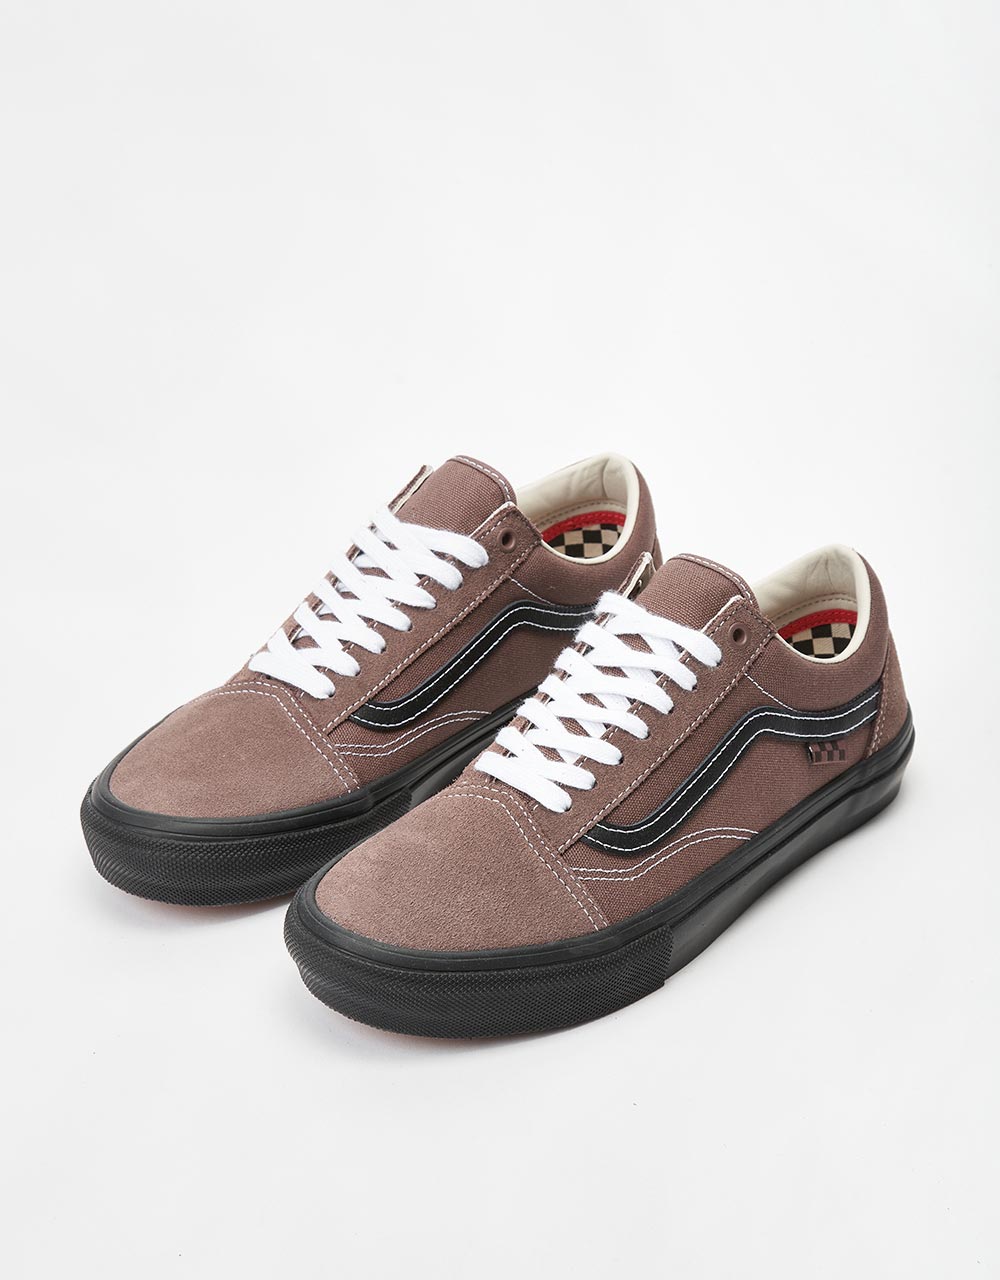 Vans Old Skool Skate Shoes - Taupe